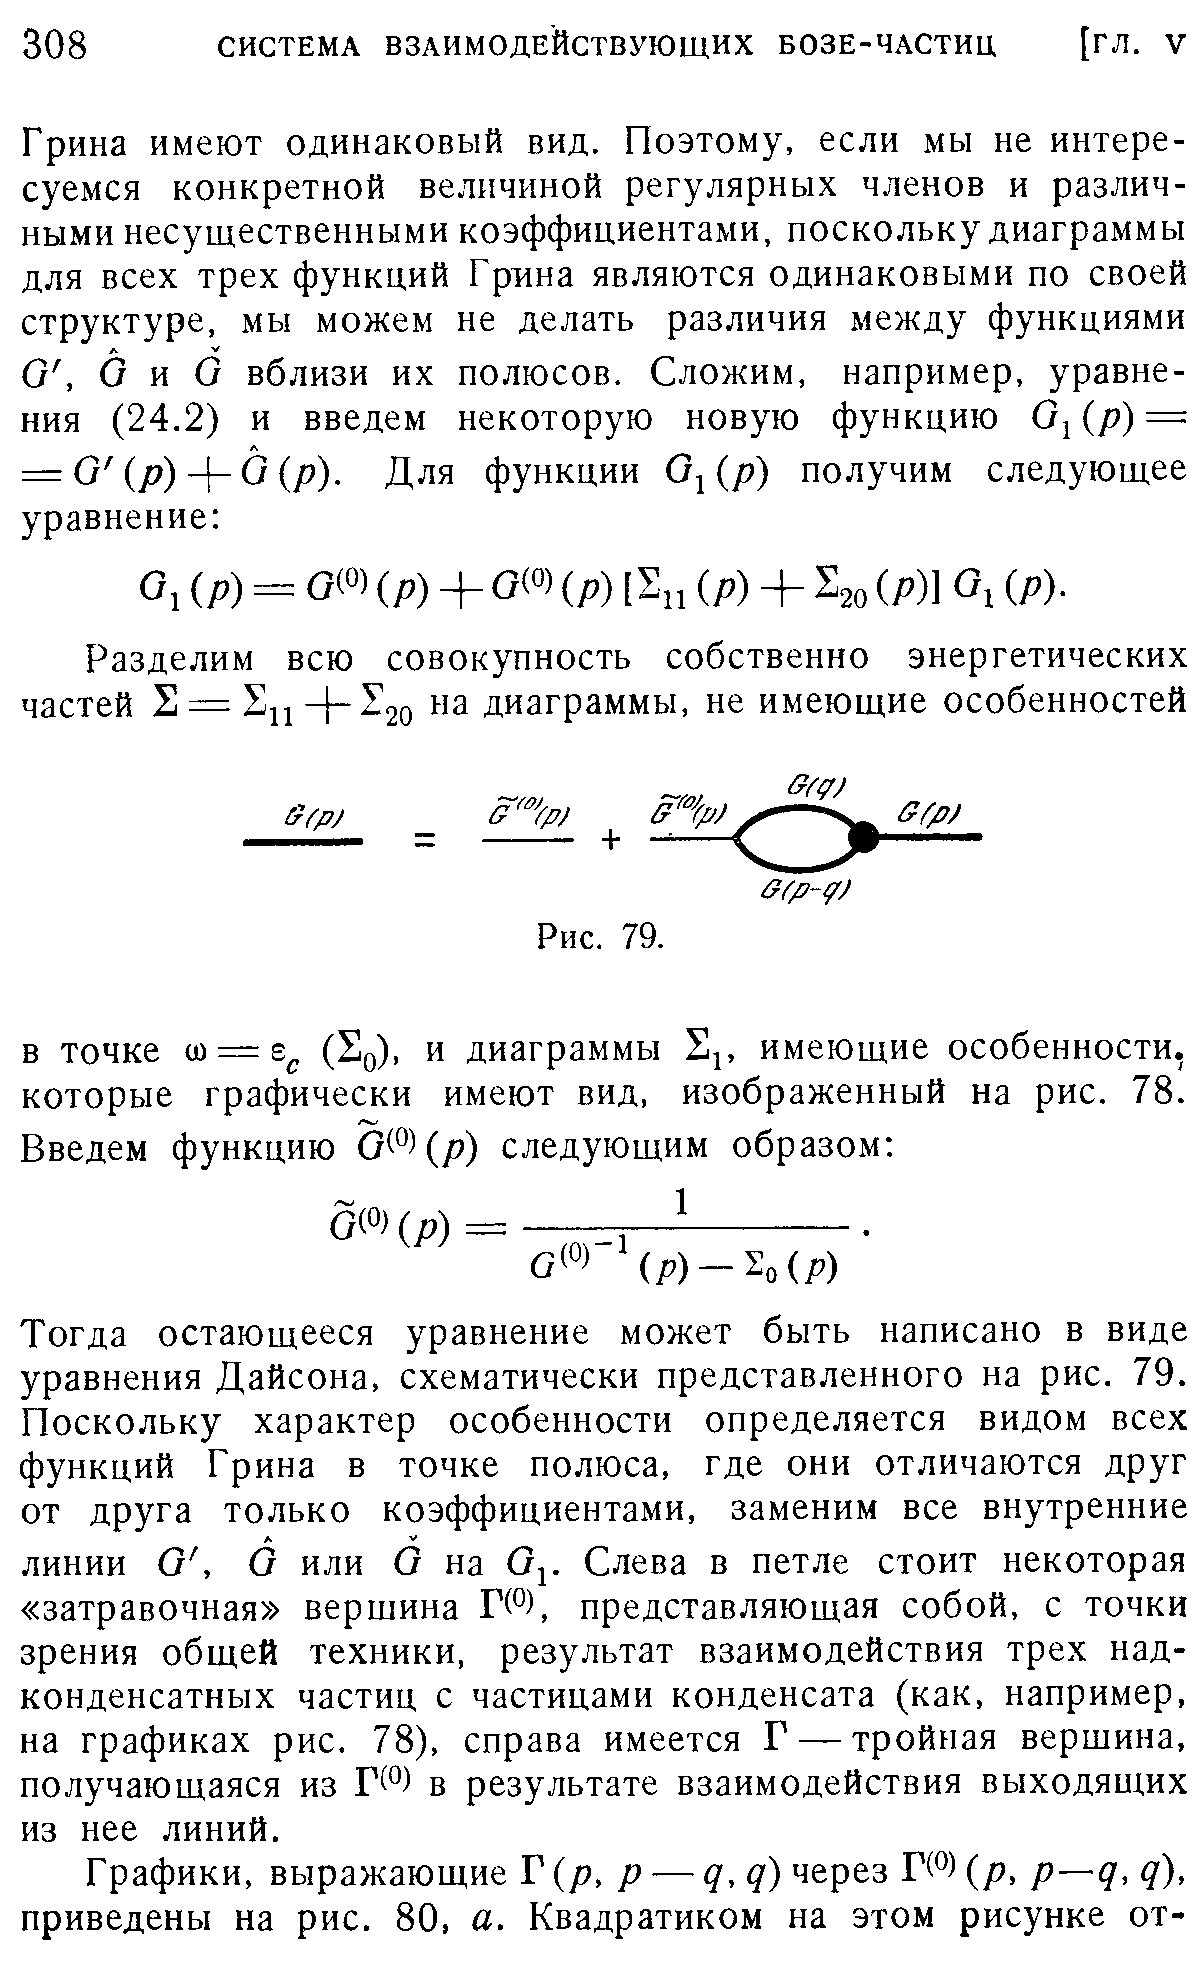 Тогда остающееся уравнение может быть написано в виде уравнения Дайсона, схематически представленного на рис. 79. Поскольку характер особенности определяется видом всех функций Грина в точке полюса, где они отличаются друг от друга только коэффициентами, заменим все внутренние линии О, О или О на Слева в петле стоит некоторая затравочная вершина Г(°), представляющая собой, с точки зрения общей техники, результат взаимодействия трех надконденсатных частиц с частицами конденсата (как, например, на графиках рис. 78), справа имеется Г — тройная вершина, получающаяся из Г(°) в результате взаимодействия выходящих из нее линий.
